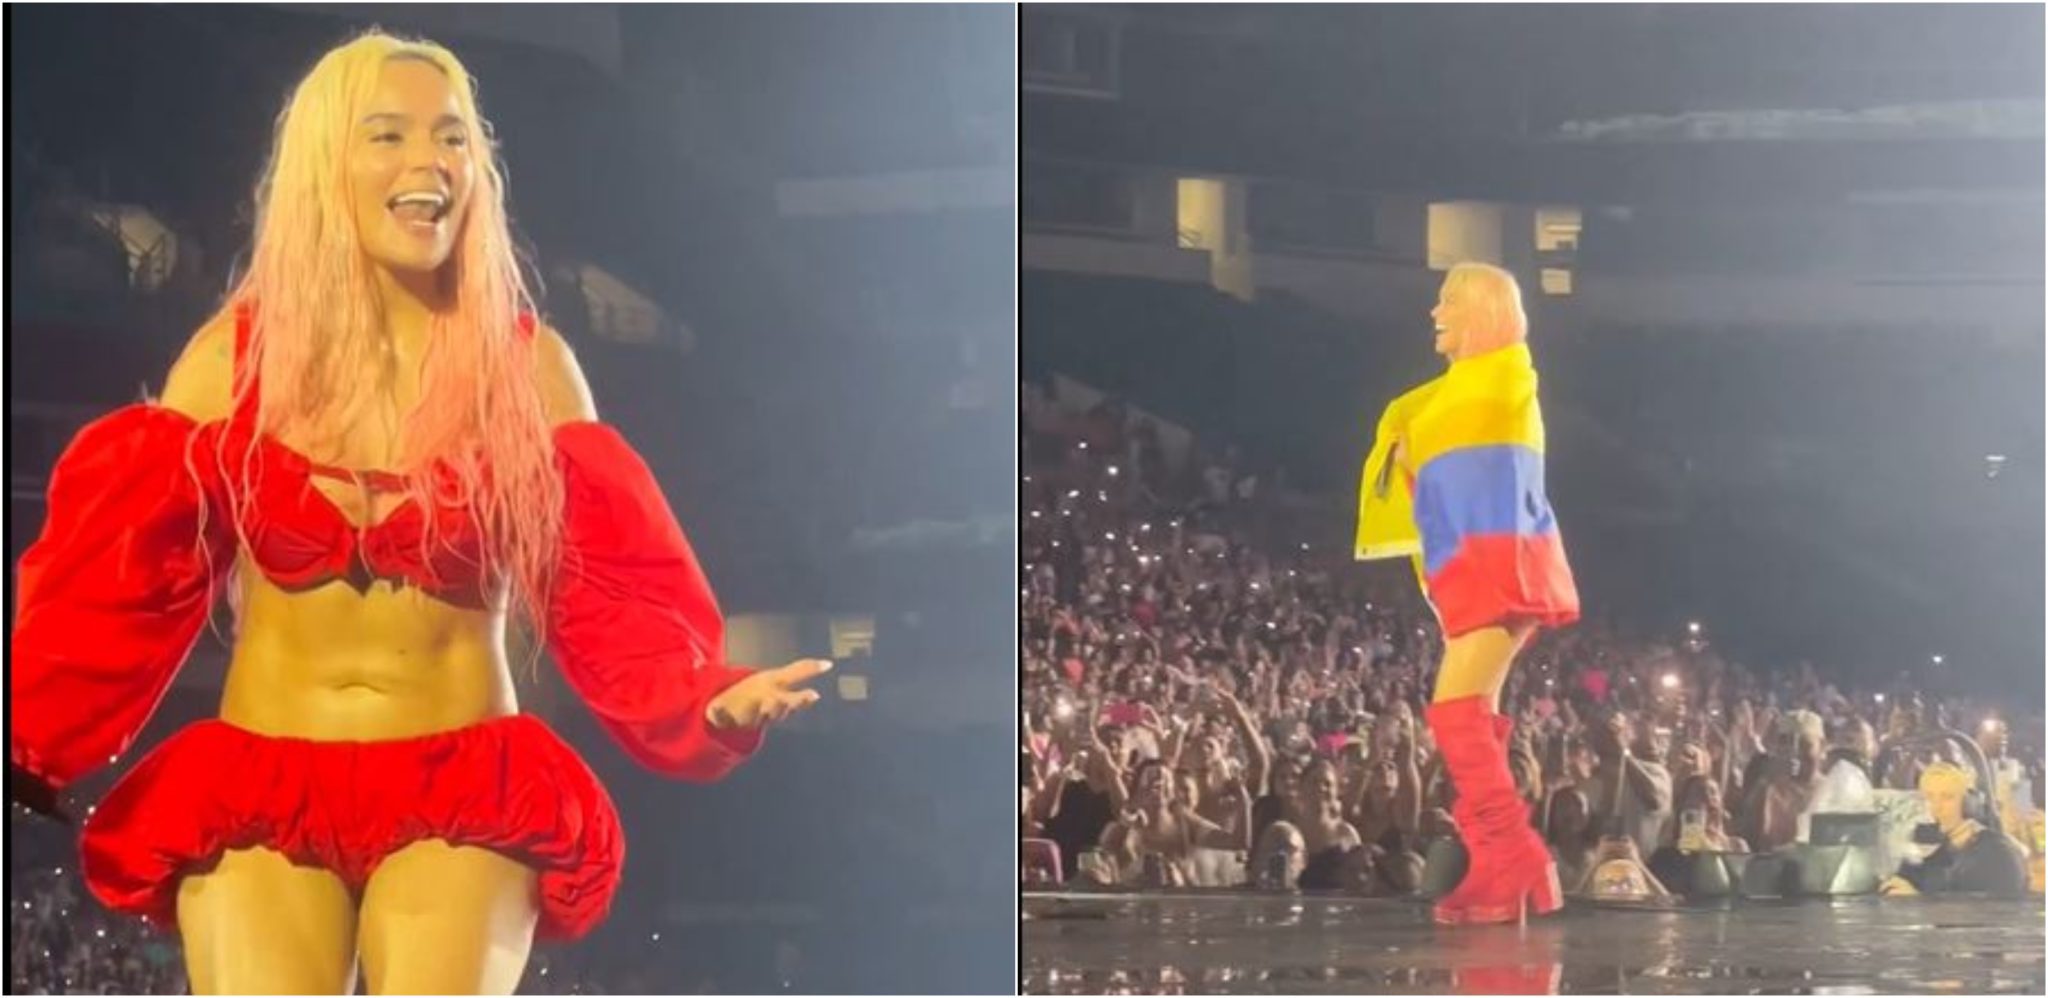 [Video] ¡Un amor! Karol G pidió una bandera de Colombia durante su concierto en Miami